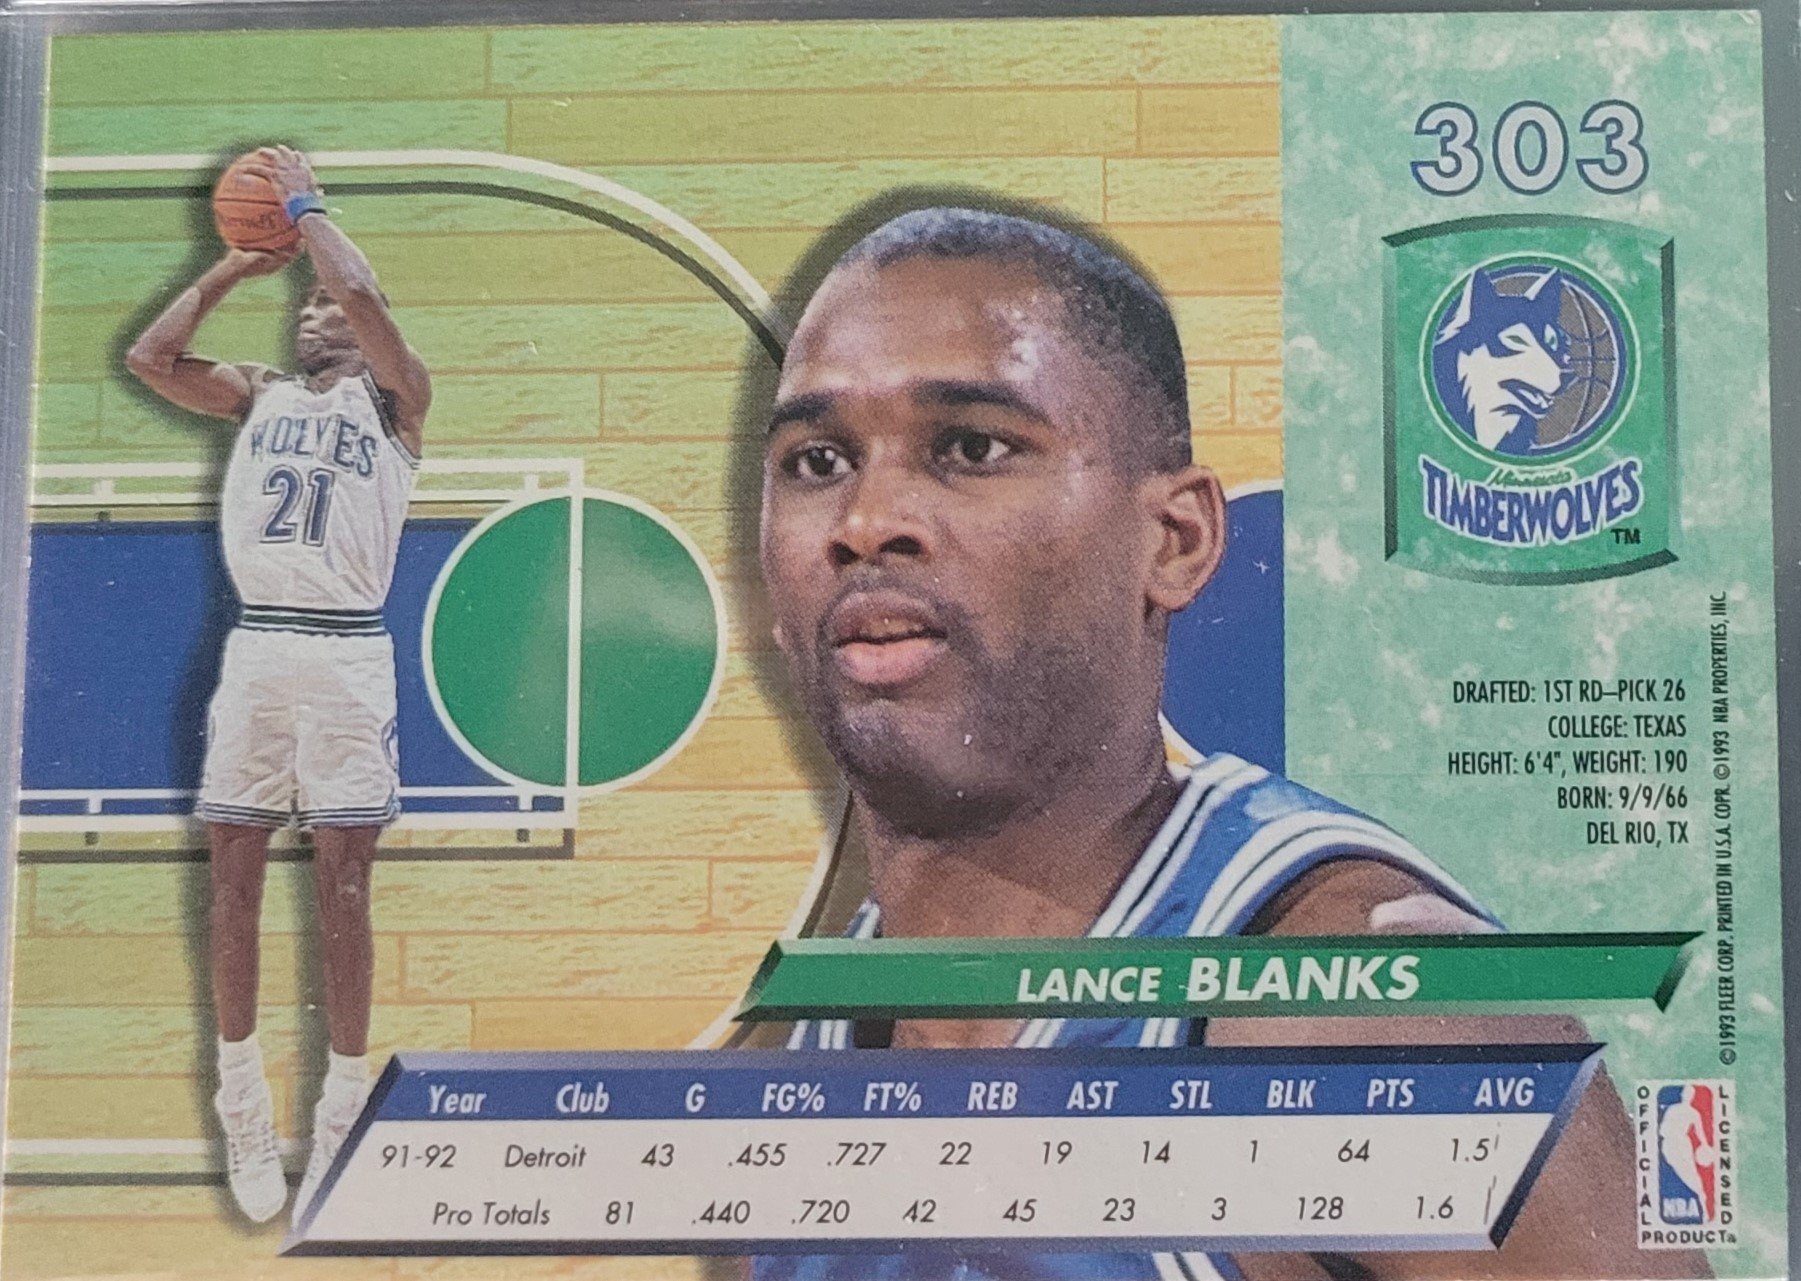 1988 Lance Blanks